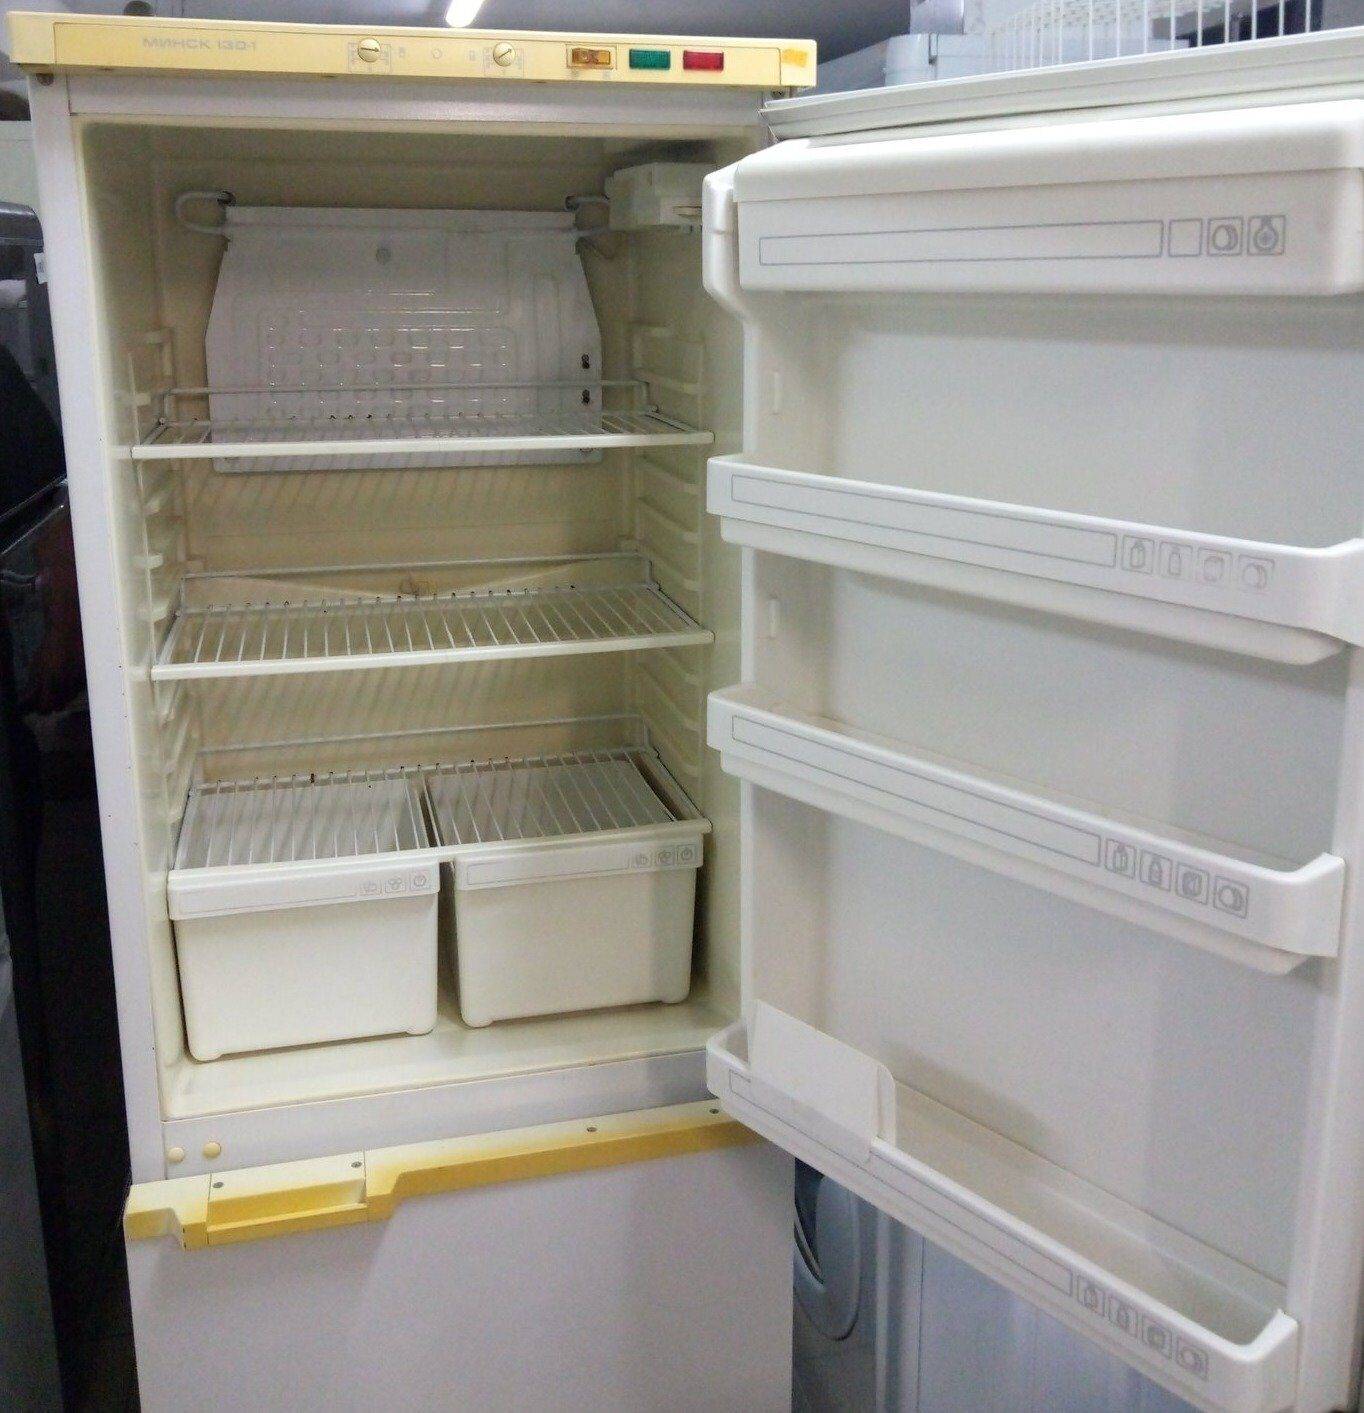 Регулировка температуры в холодильнике атлант - как правильно выставить температуру